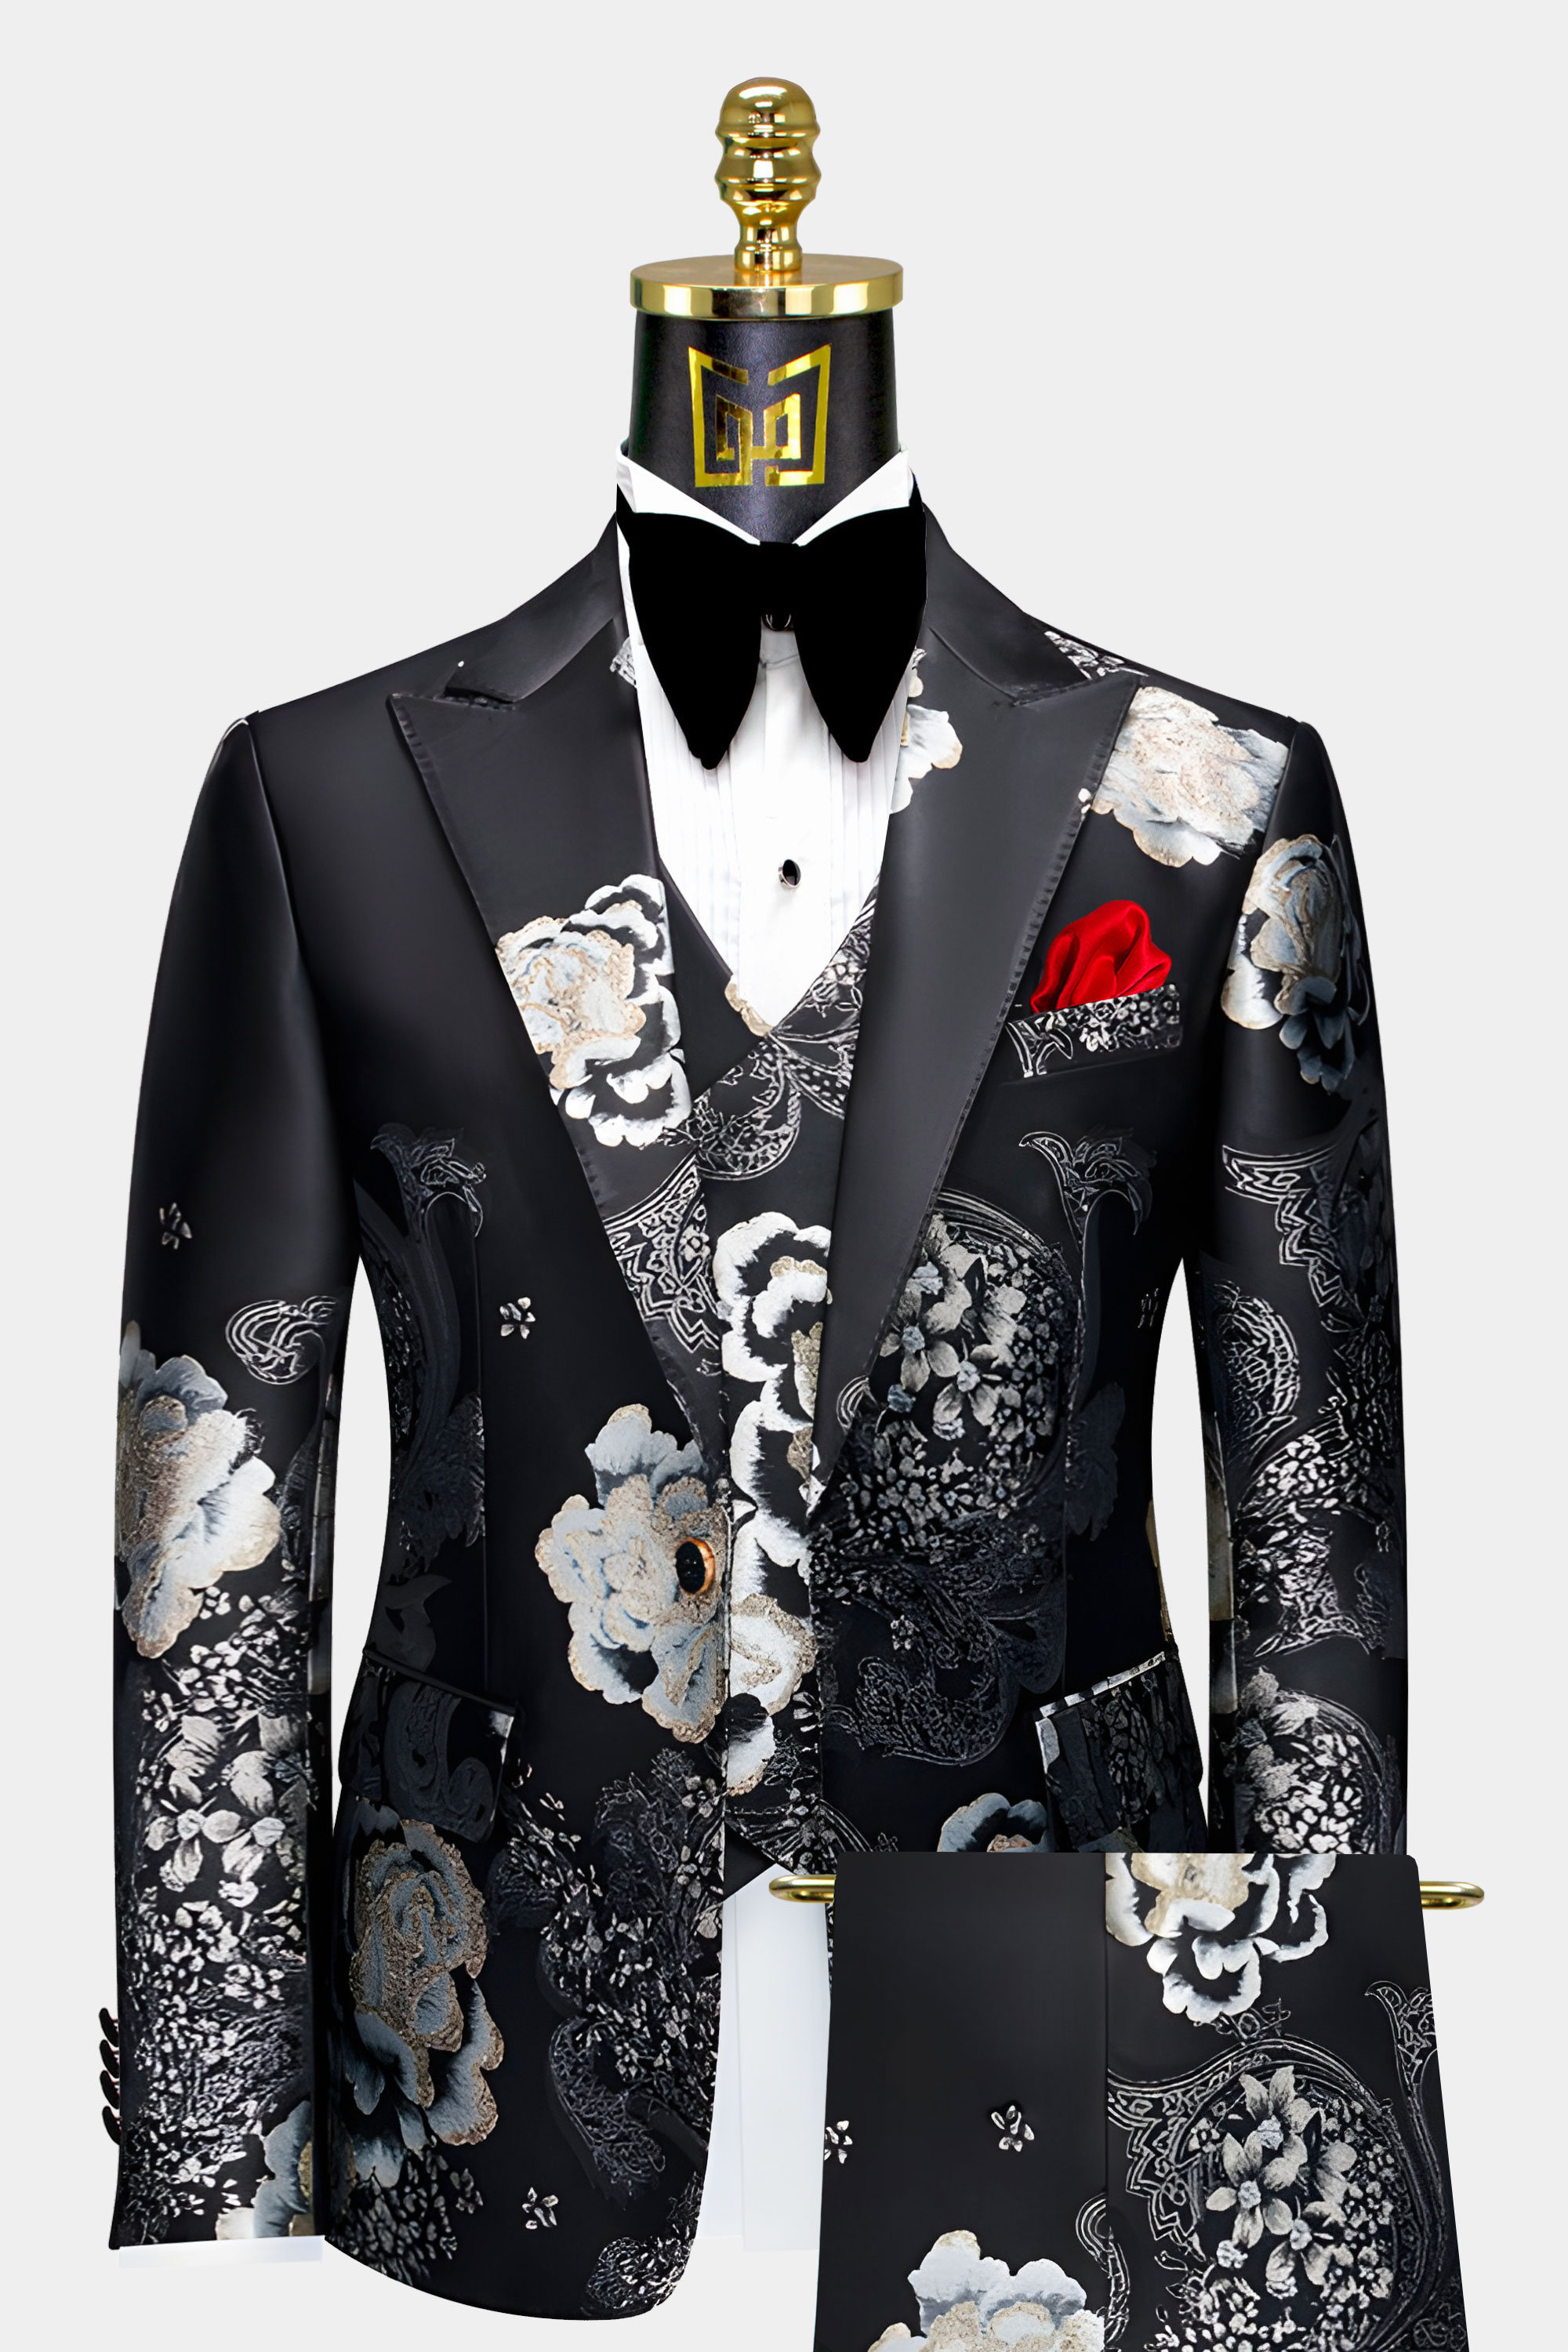 Fancy Black & Silver Floral Suit - 3 Piece